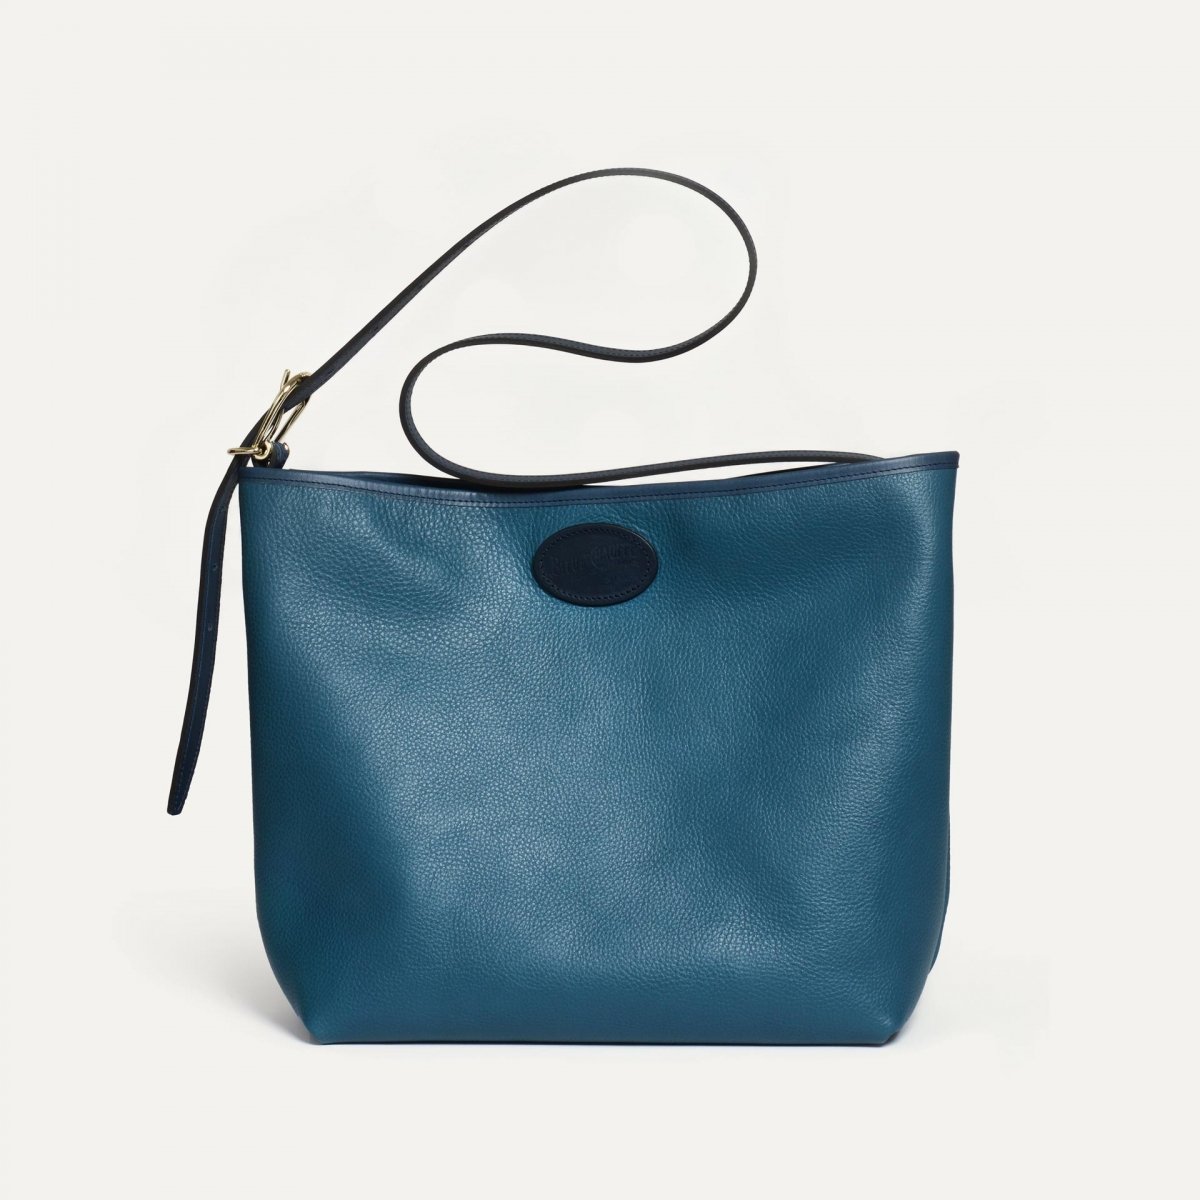 Bella besace bag - Corsair blue (image n°3)